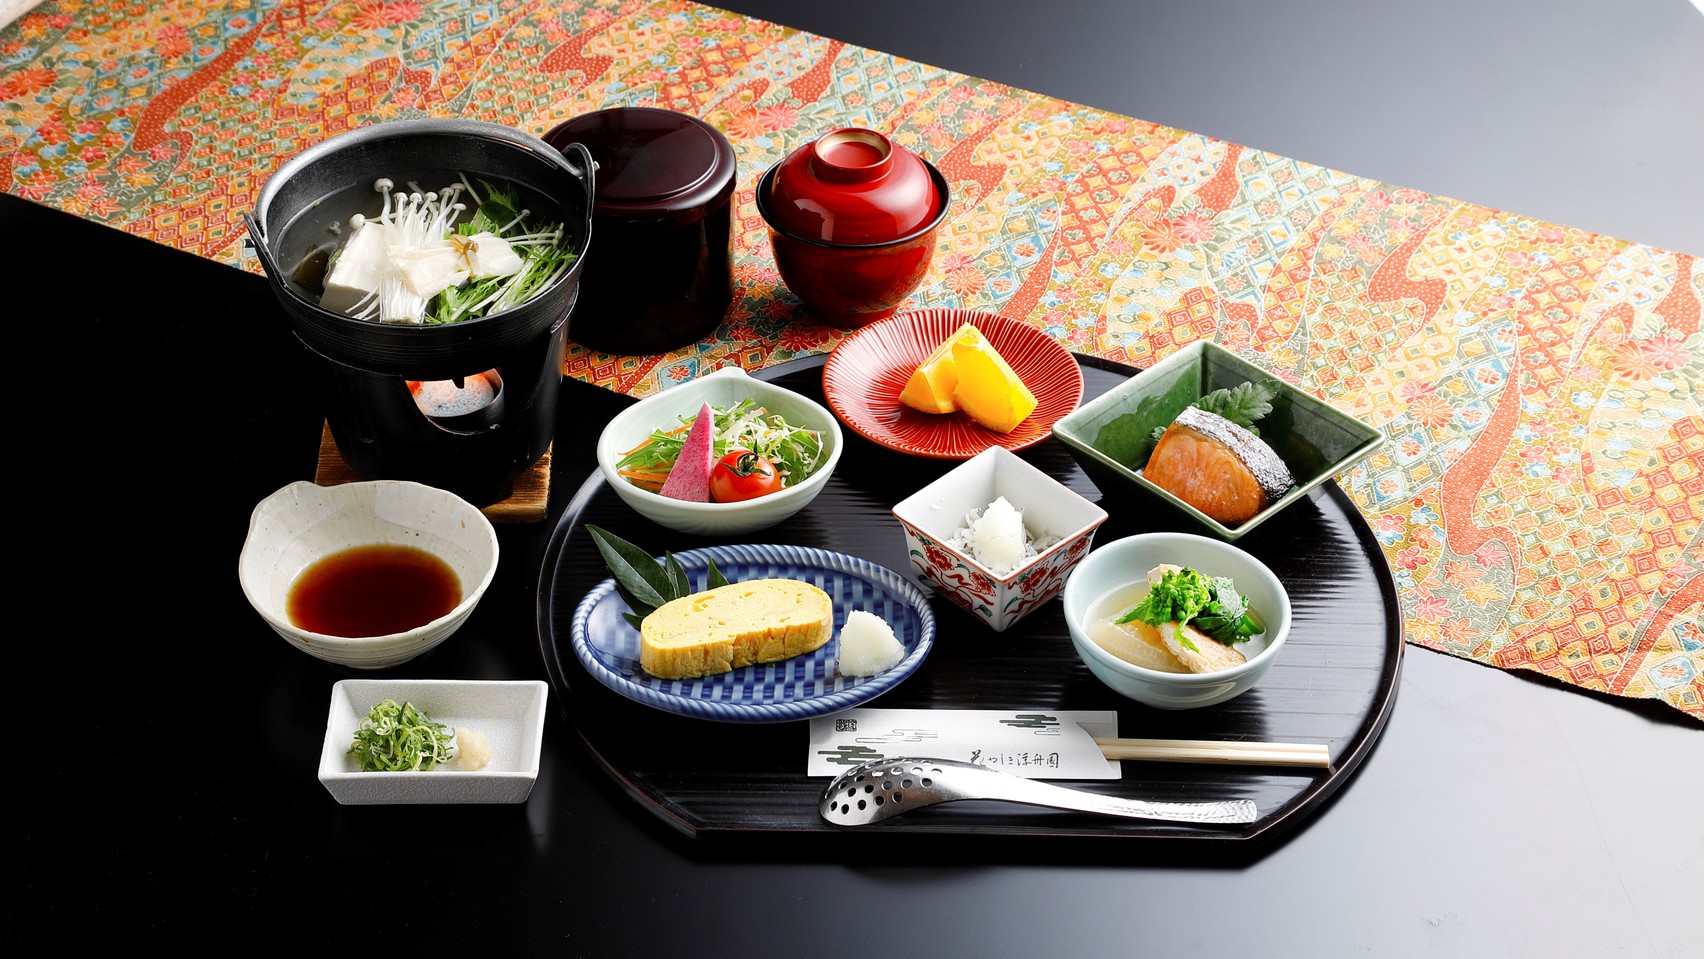 【シンプルステイ】四季折々の風情を楽しめる京都宇治へ -朝食付き-